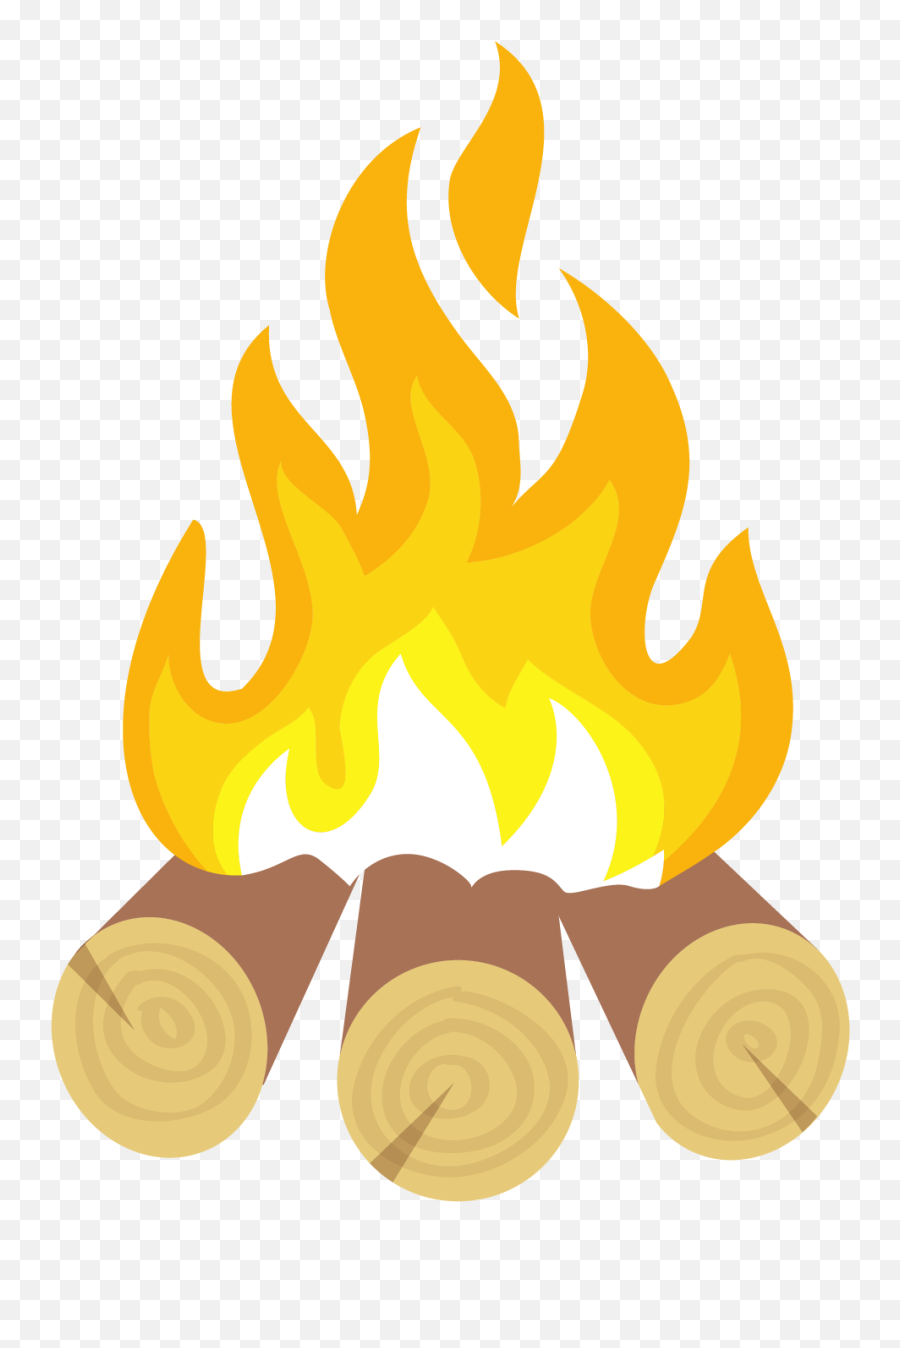 Fire Clip Art Cartoon Pile Transprent - Fire Cartoon Drawing Gambar Animasi Kayu Bakar Emoji,Cartoon Transparent Background Fire Flame Emoji